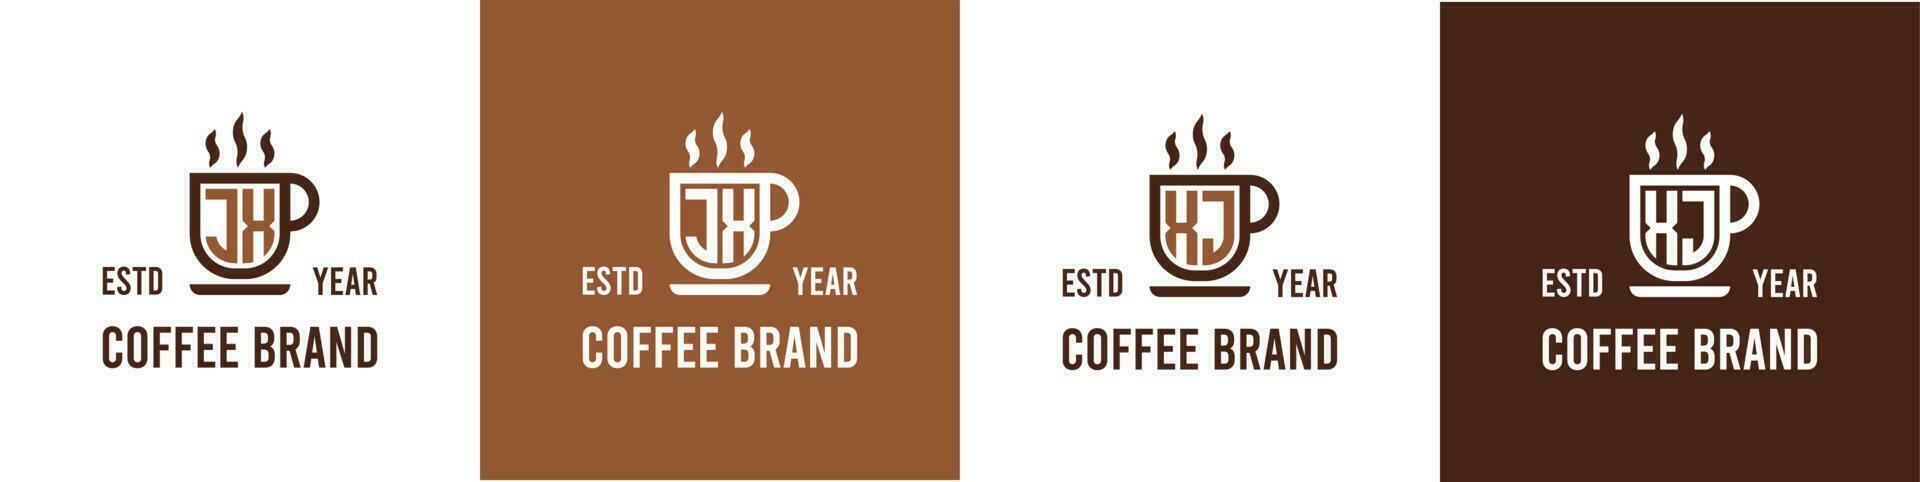 carta jx e xj café logotipo, adequado para qualquer o negócio relacionado para café, chá, ou de outros com jx ou xj iniciais. vetor